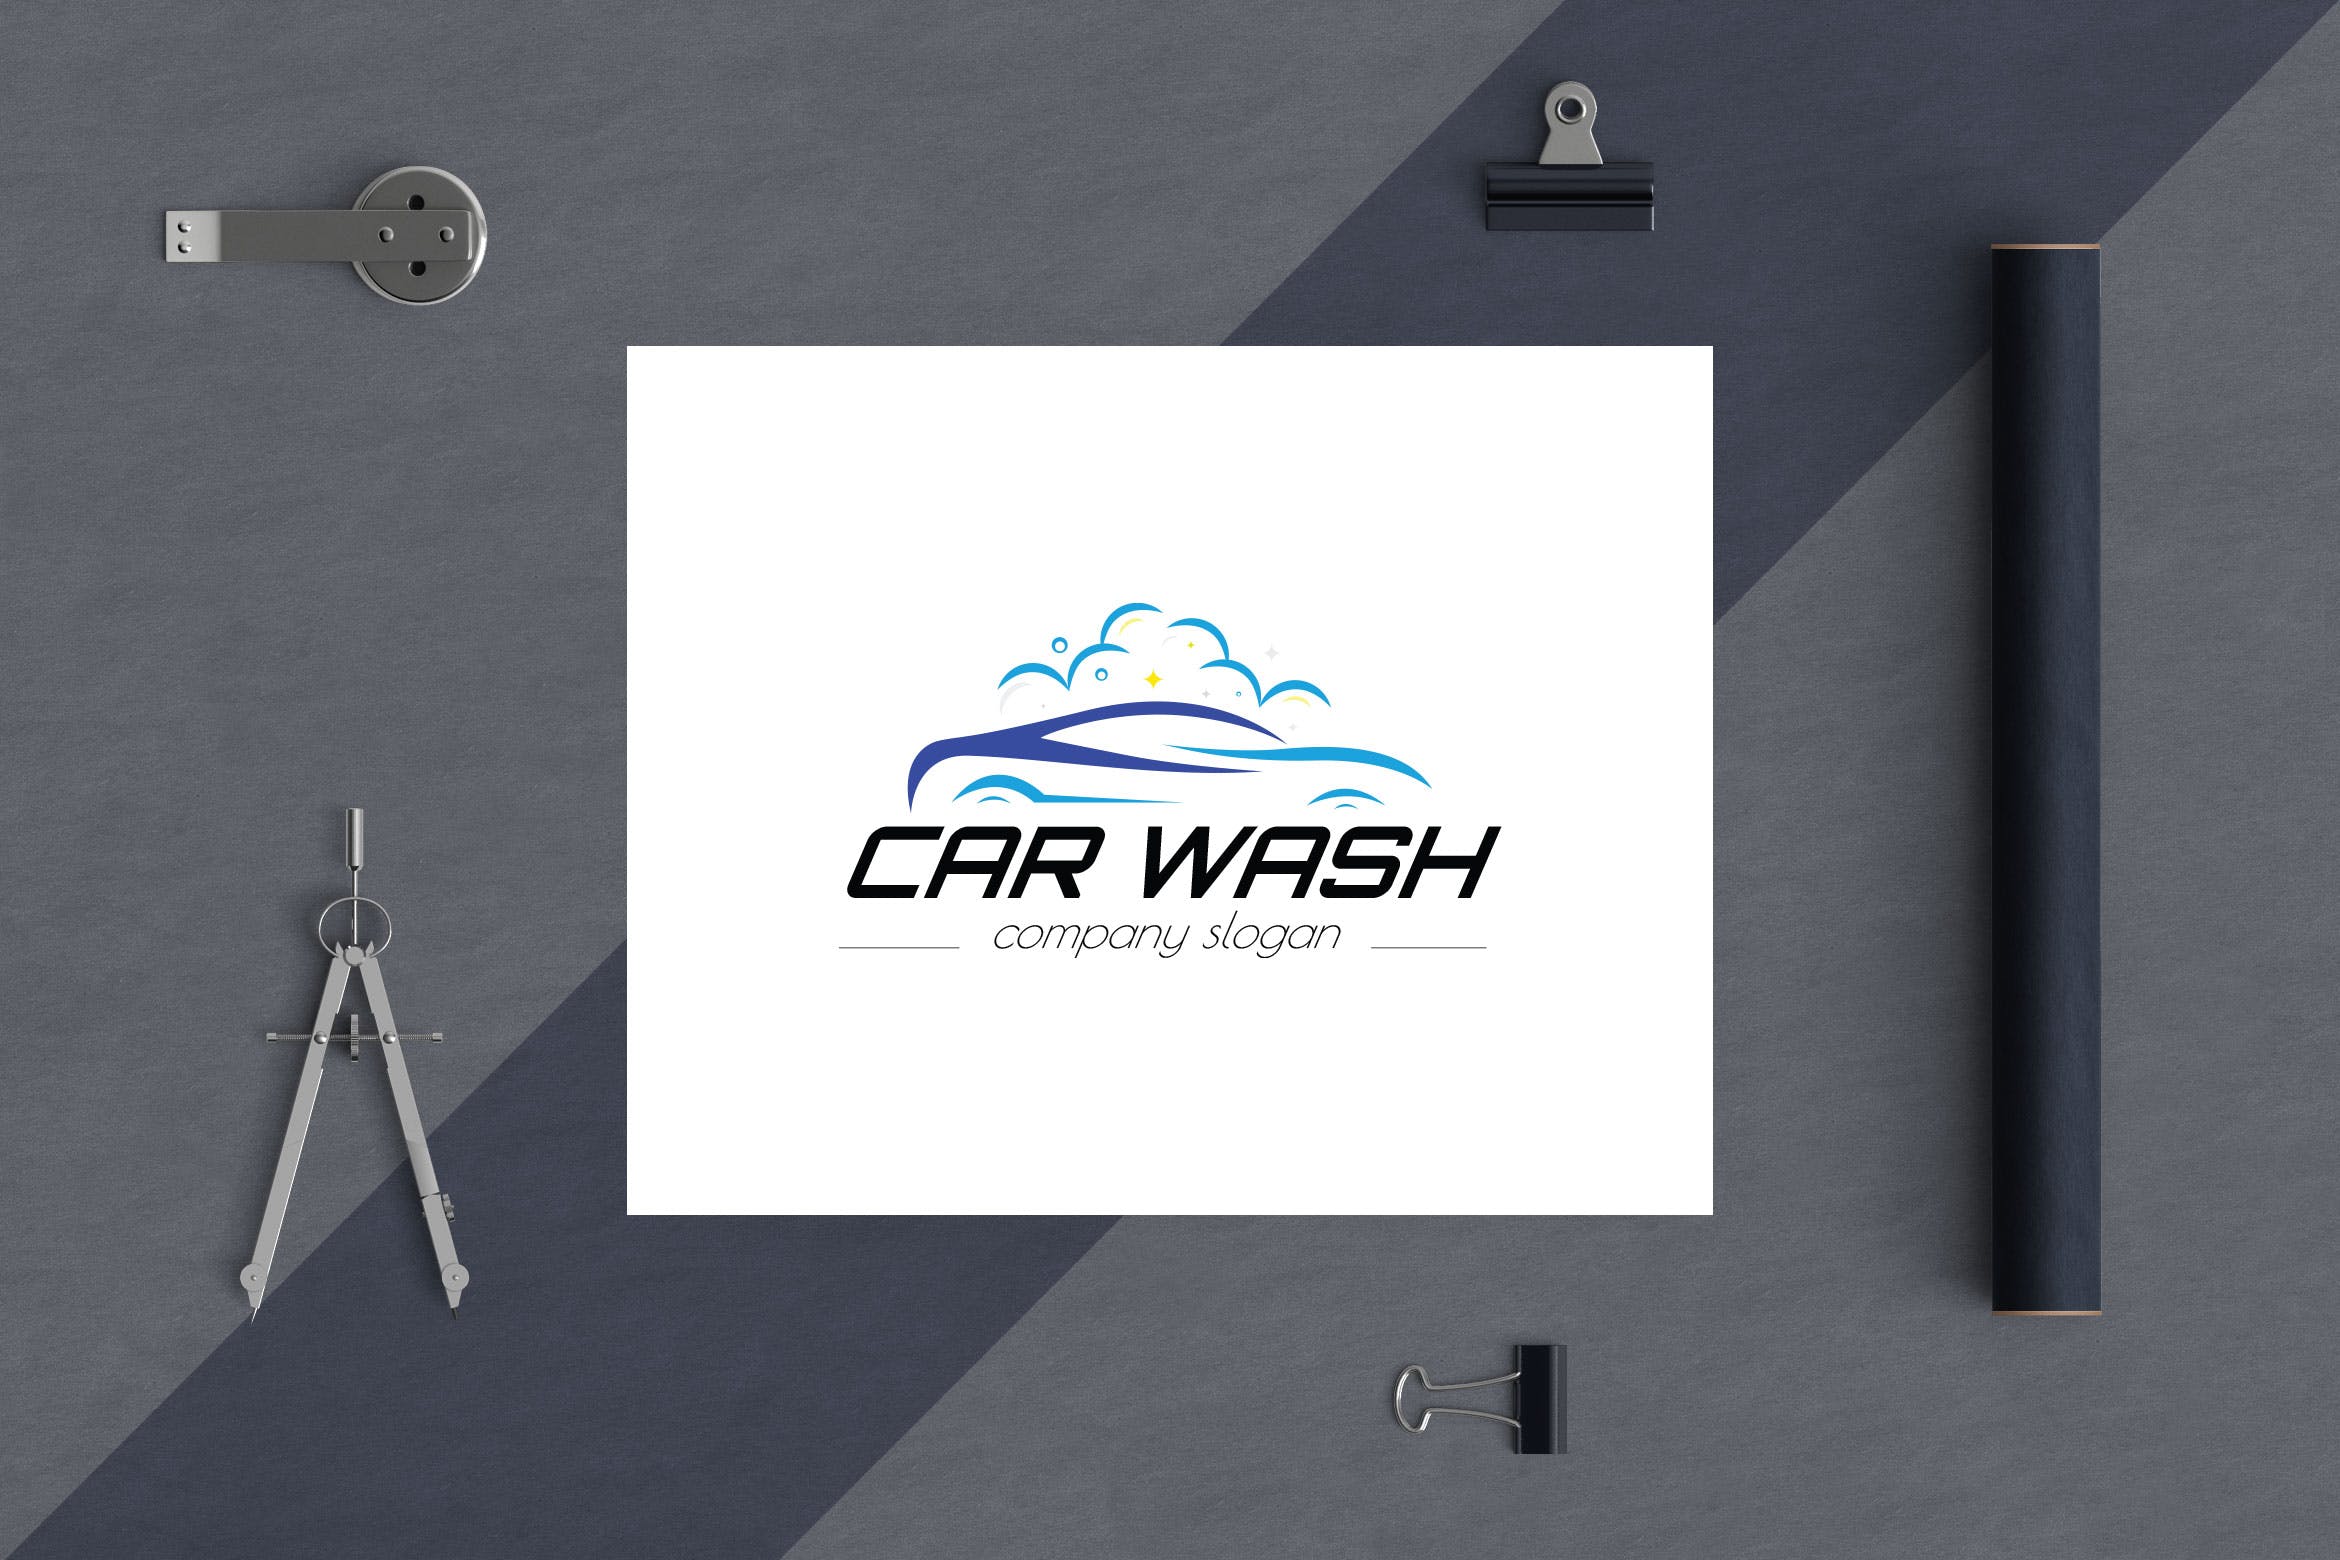 洗车店品牌Logo设计蚂蚁素材精选模板 Car Wash Business Logo Template插图